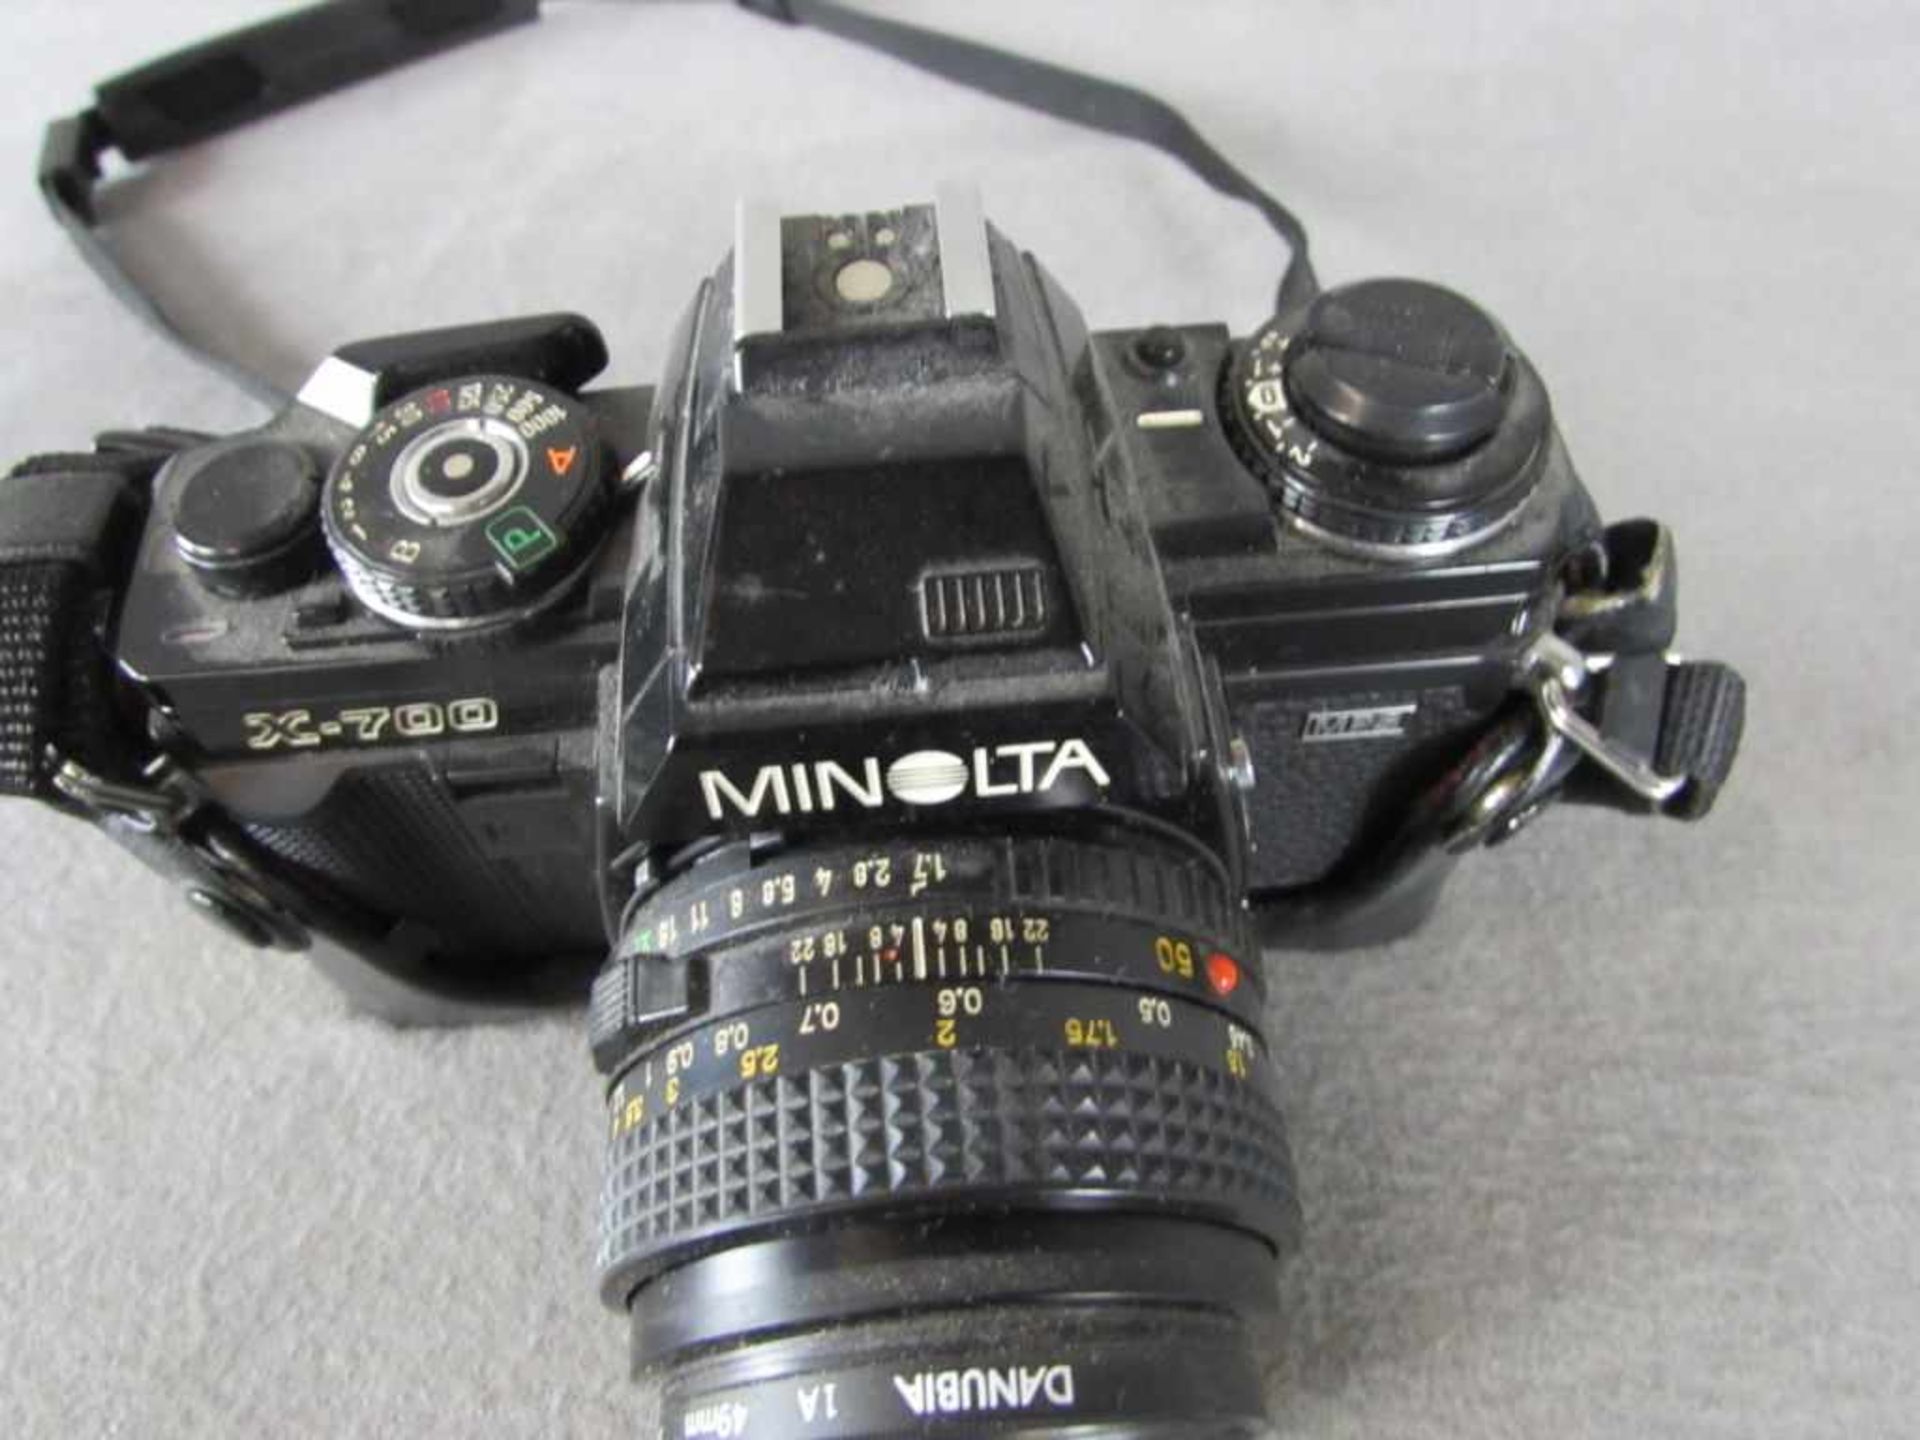 2 Spiegelreflexkameras Minolta und Revue Flex - Bild 3 aus 4